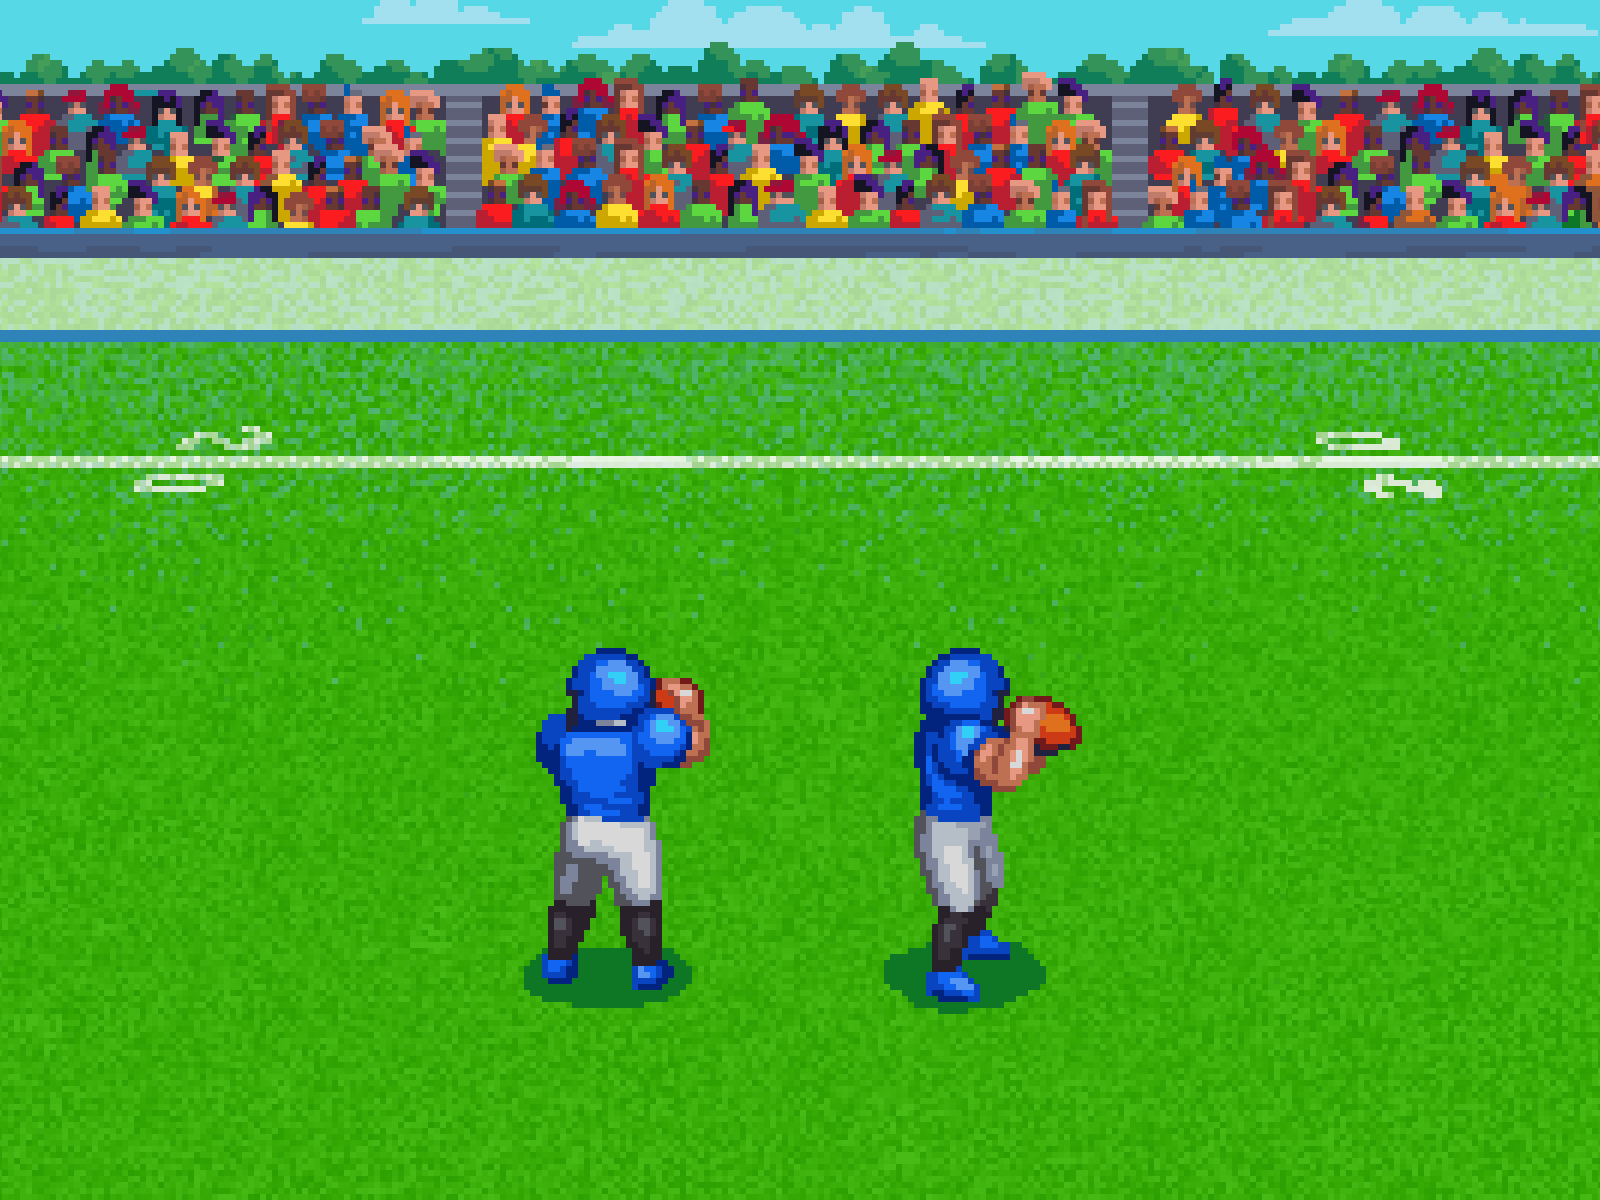 Pixel art football